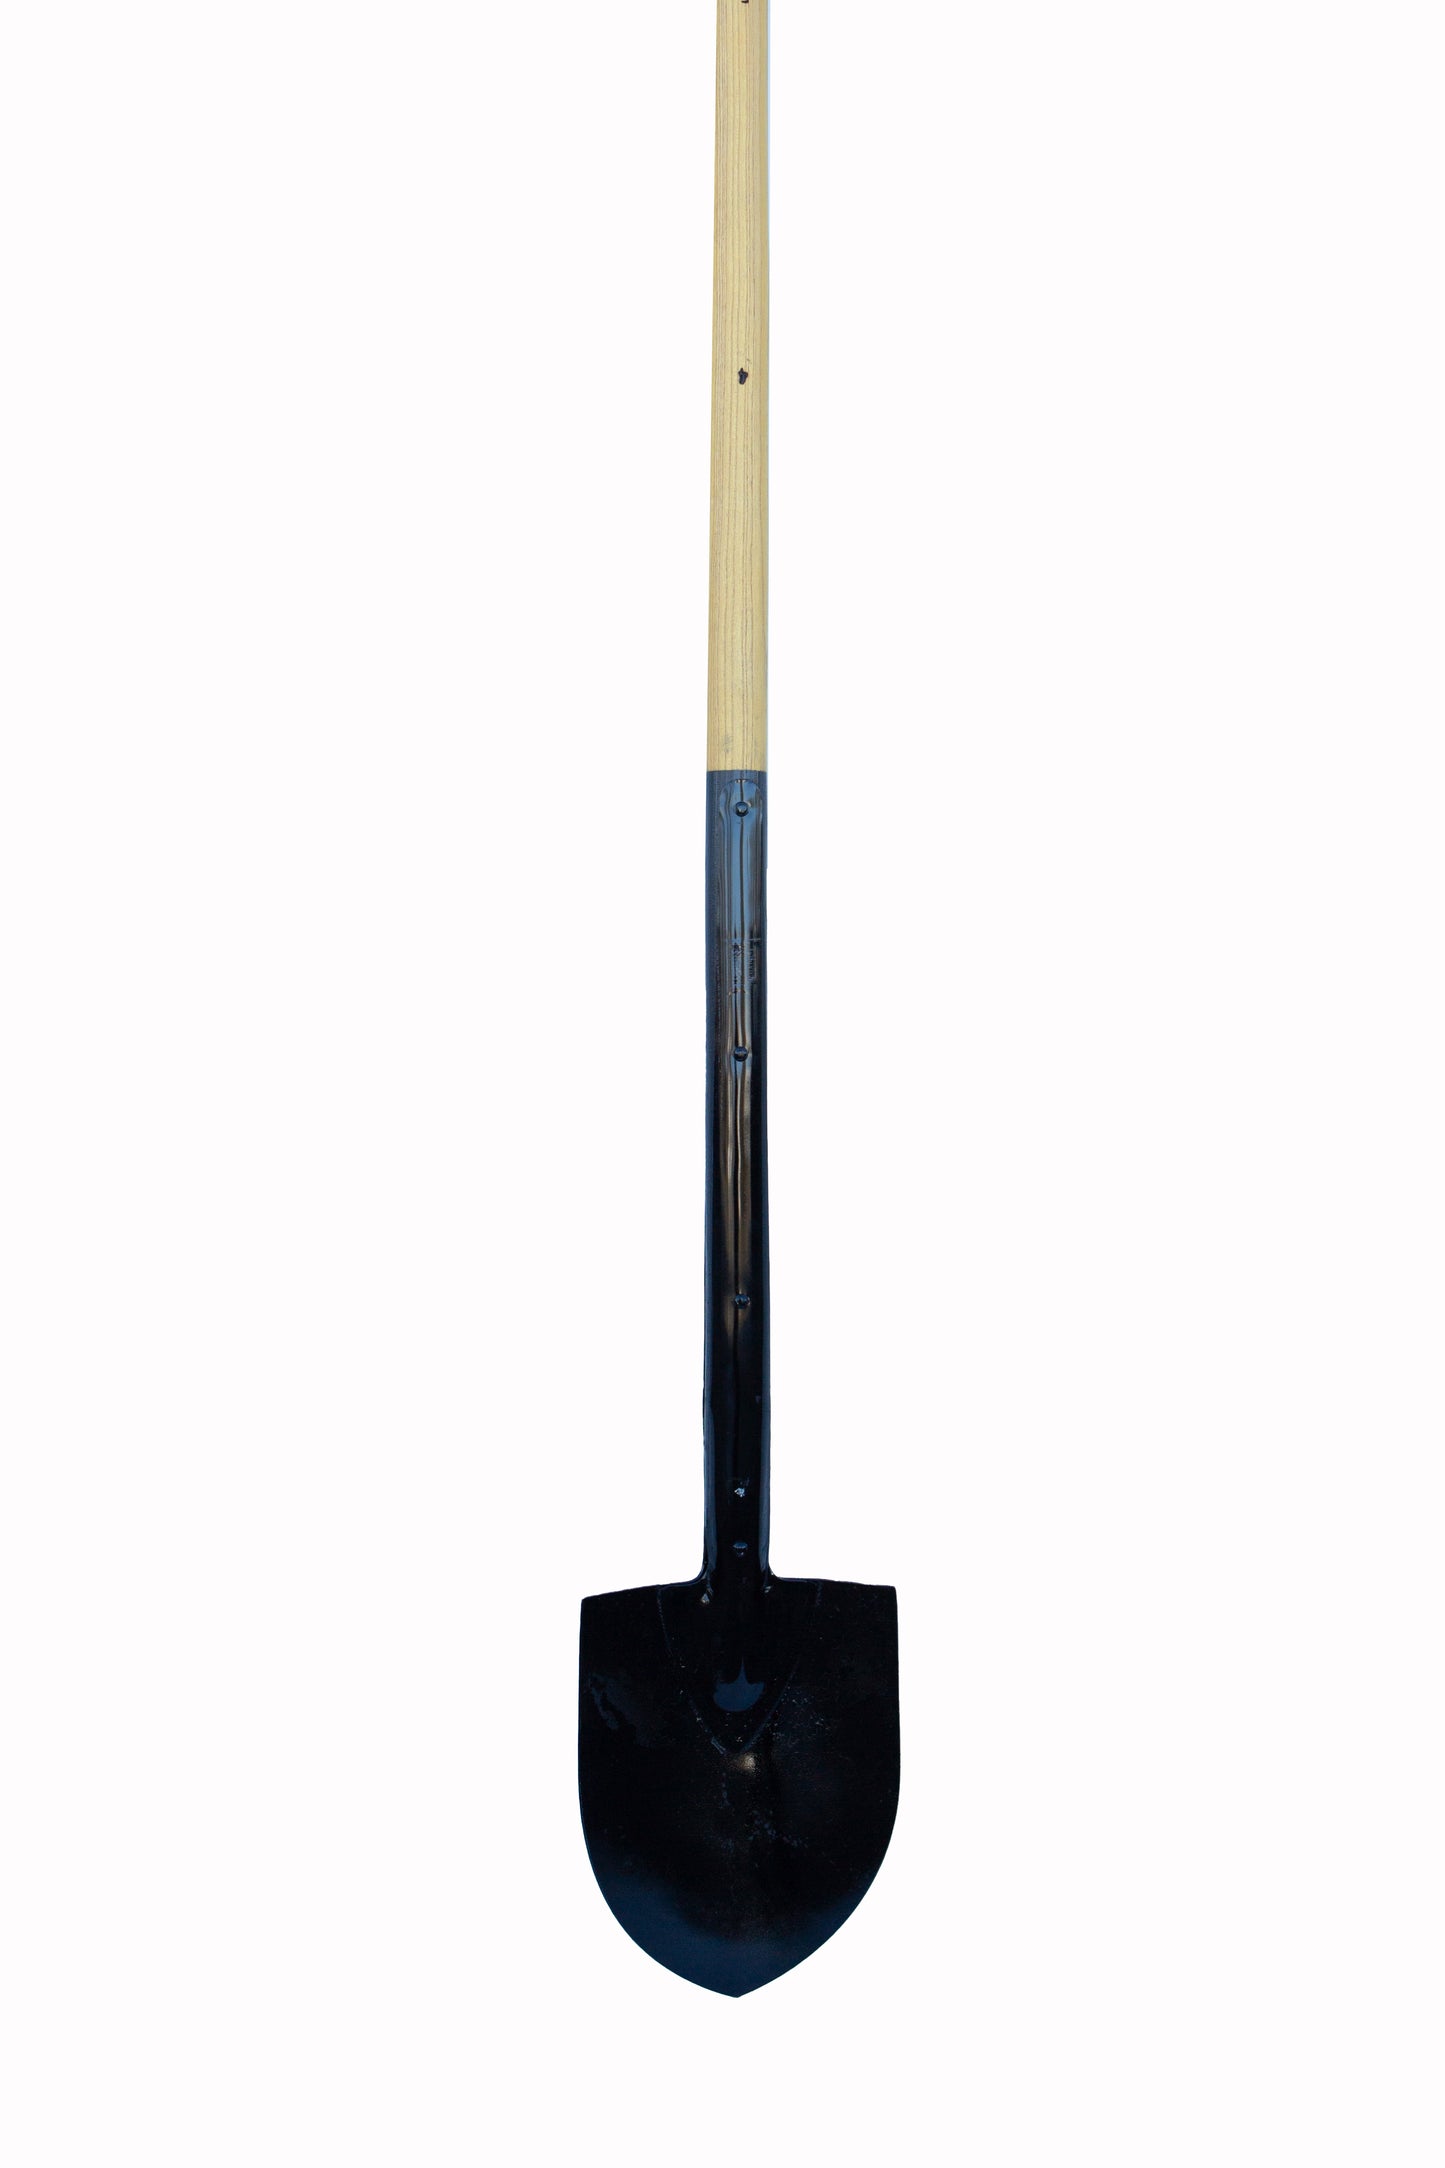 Oshkosh Tools 6 inch straight shovel blade